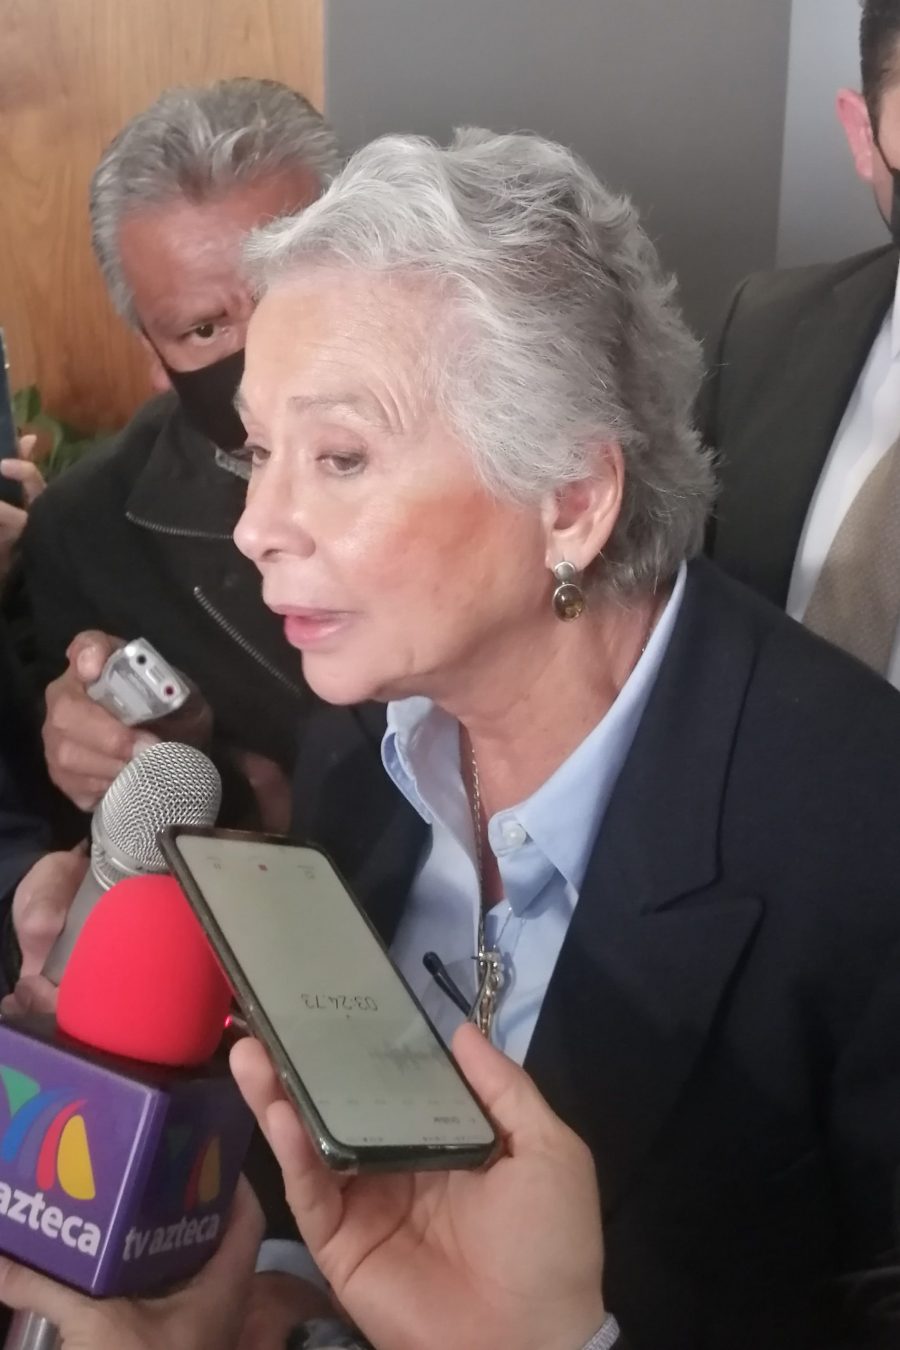 En desahogo de sesiones, Mesa Directiva será imparcial, adelanta Olga Sánchez Cordero